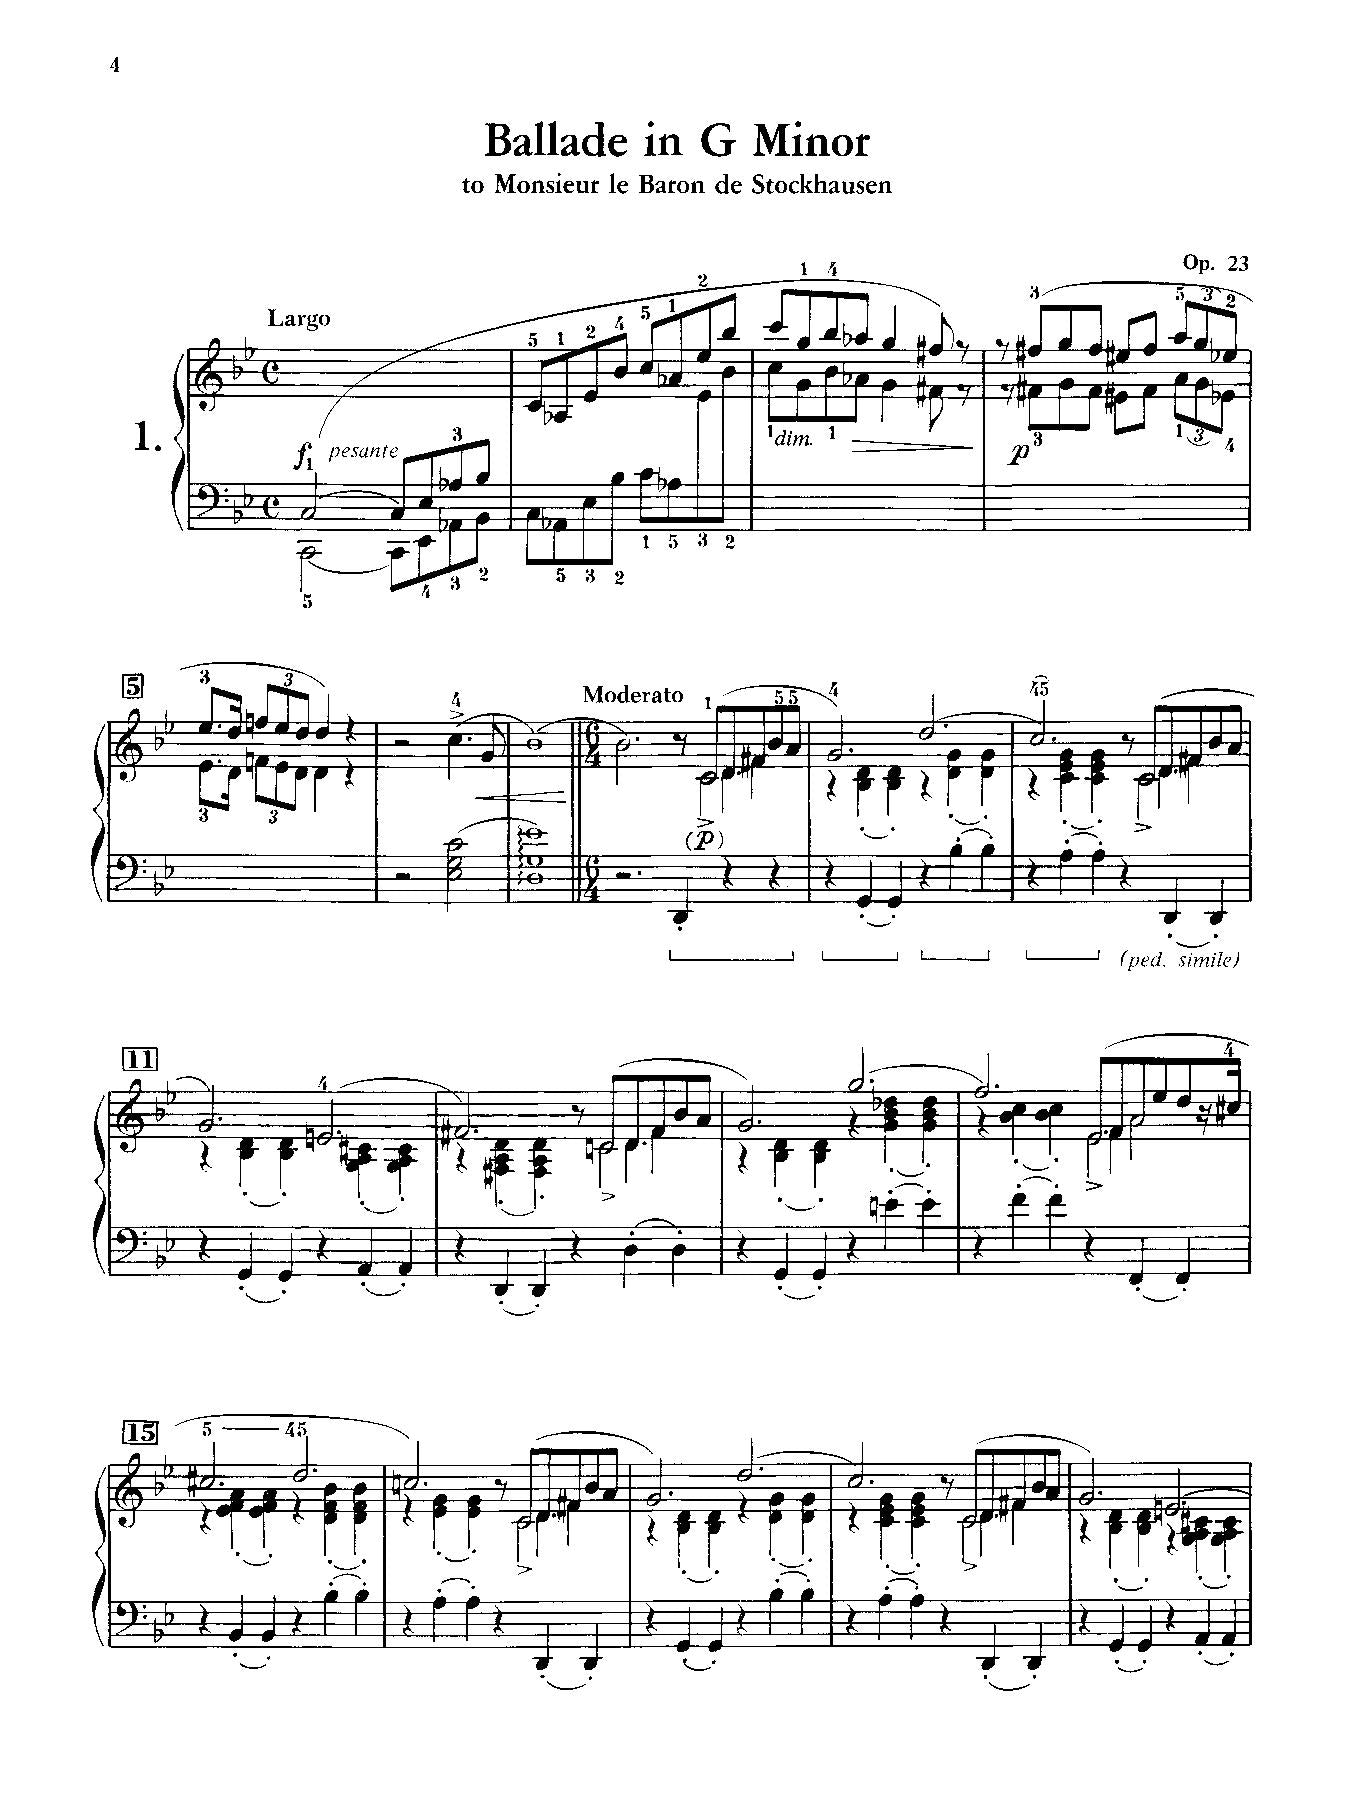 Chopin: Ballades for Piano Solo